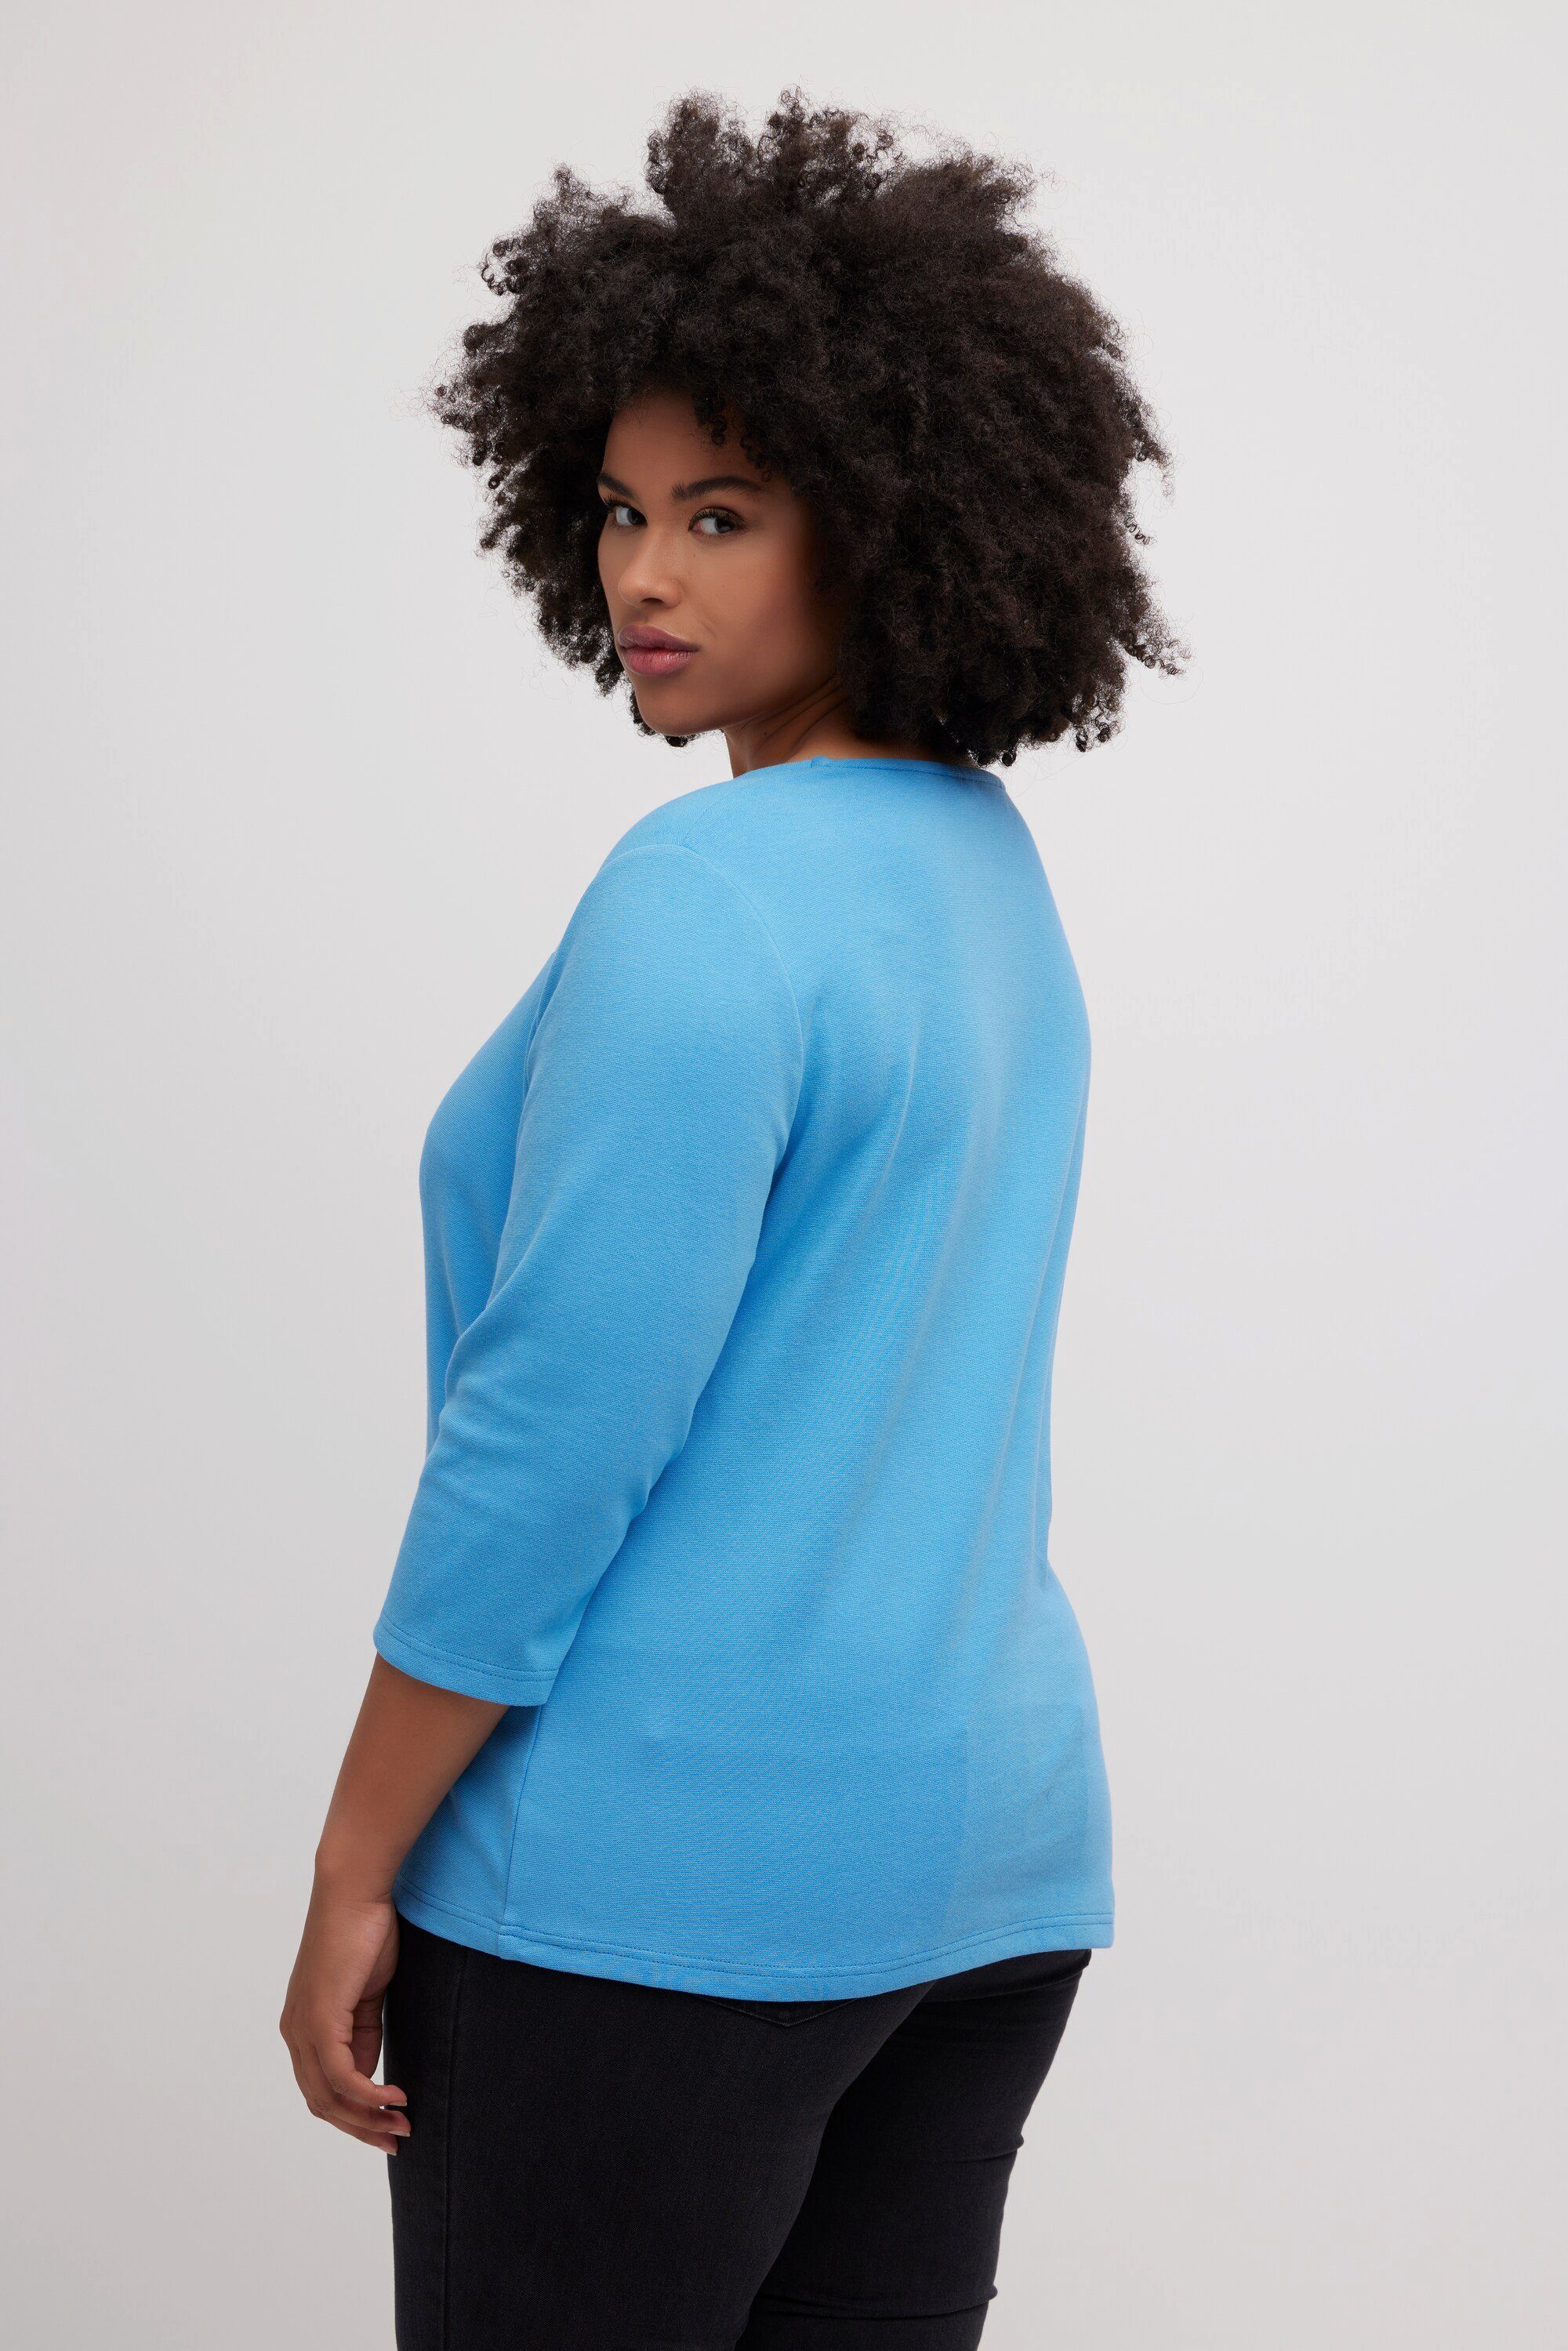 Classic Carrée-Ausschnitt Shirt stahlblau Sweatshirt Popken Quernaht 3/4-Arm Ulla